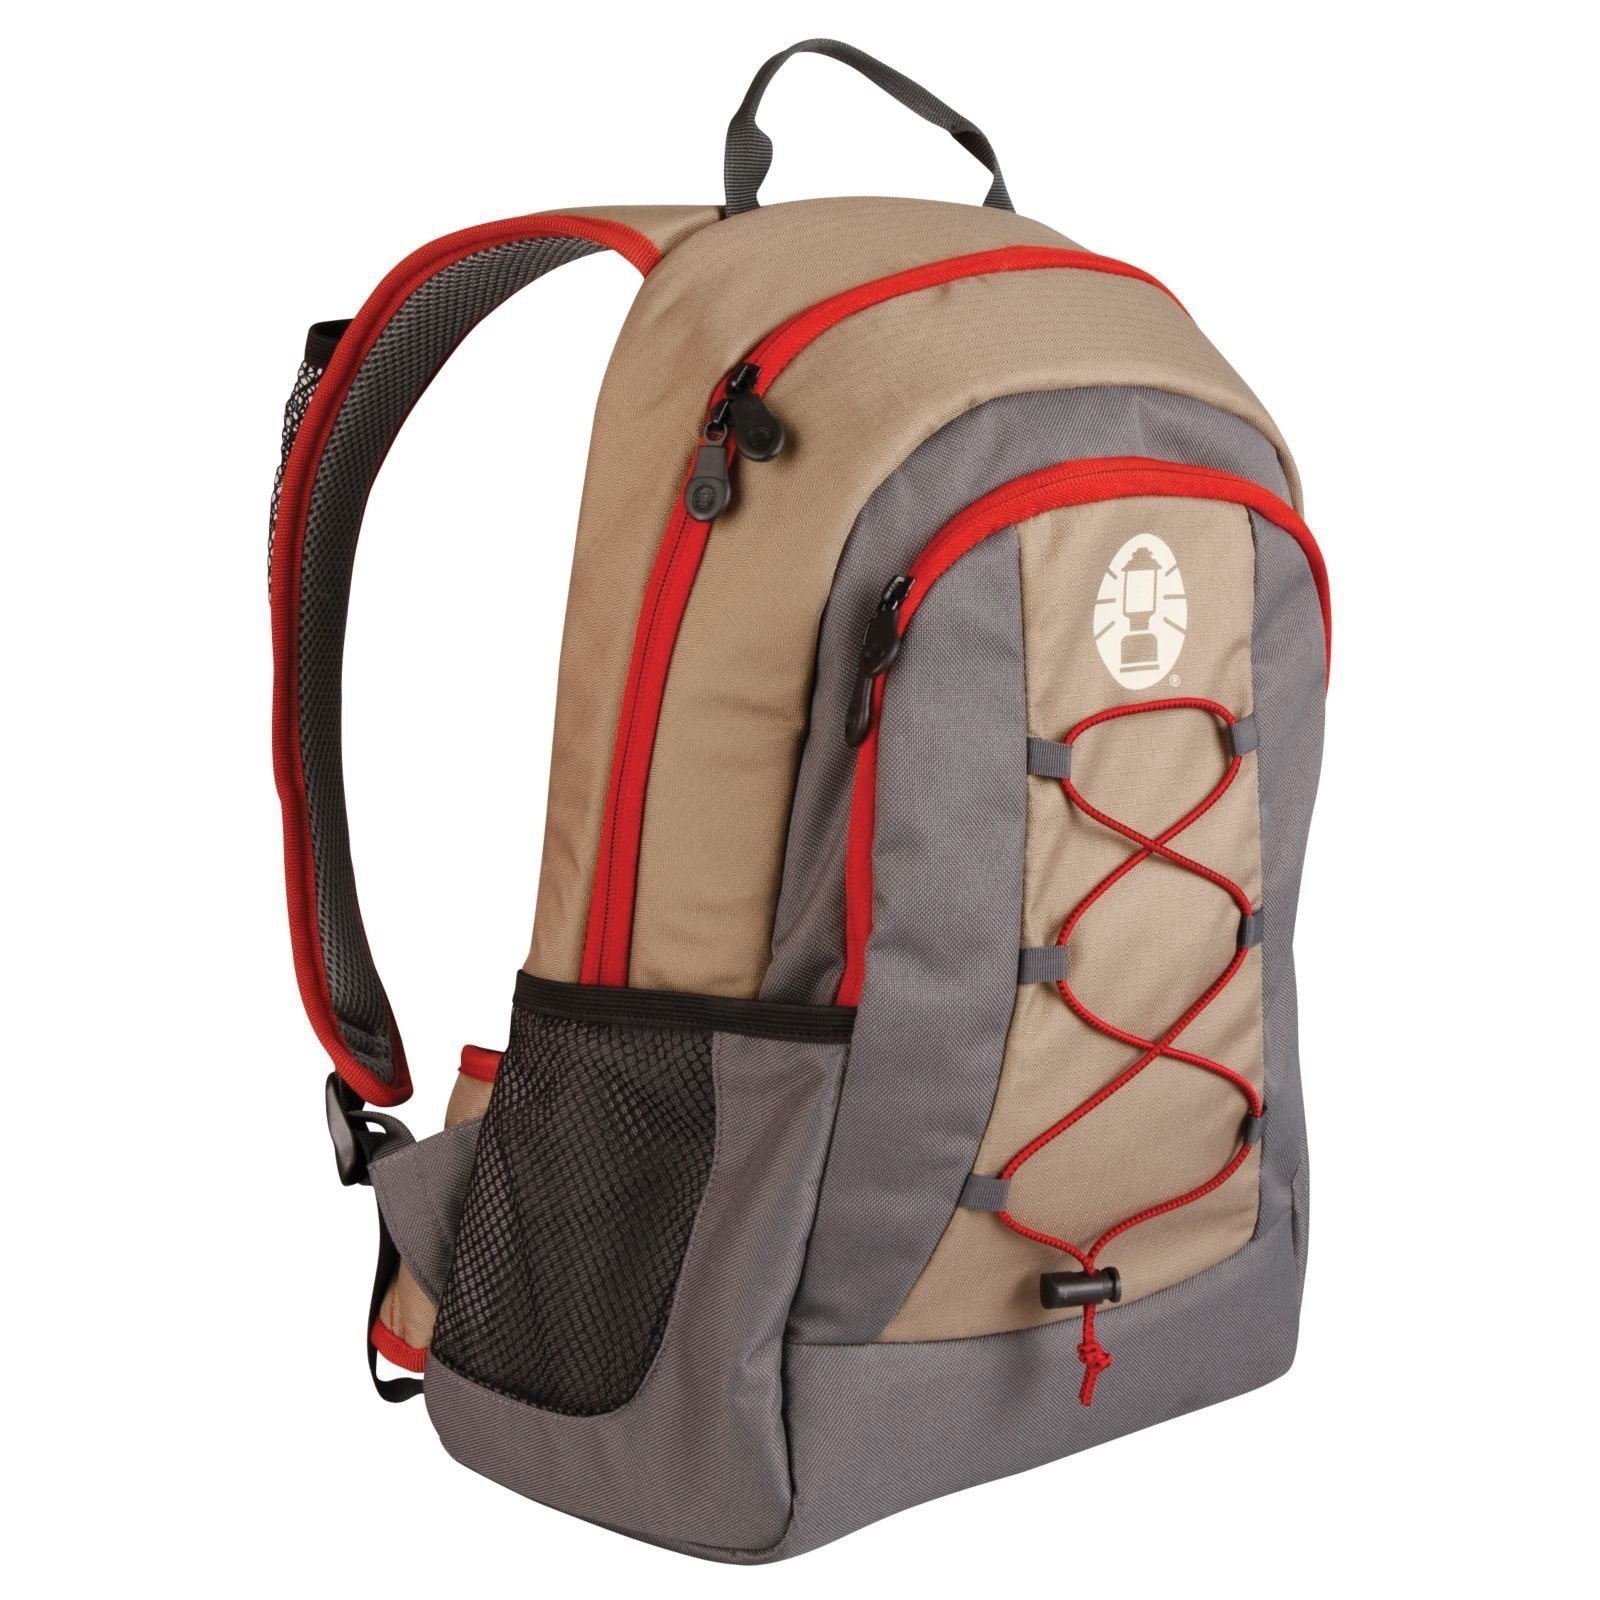 Coleman C003 Soft Backpack Cooler